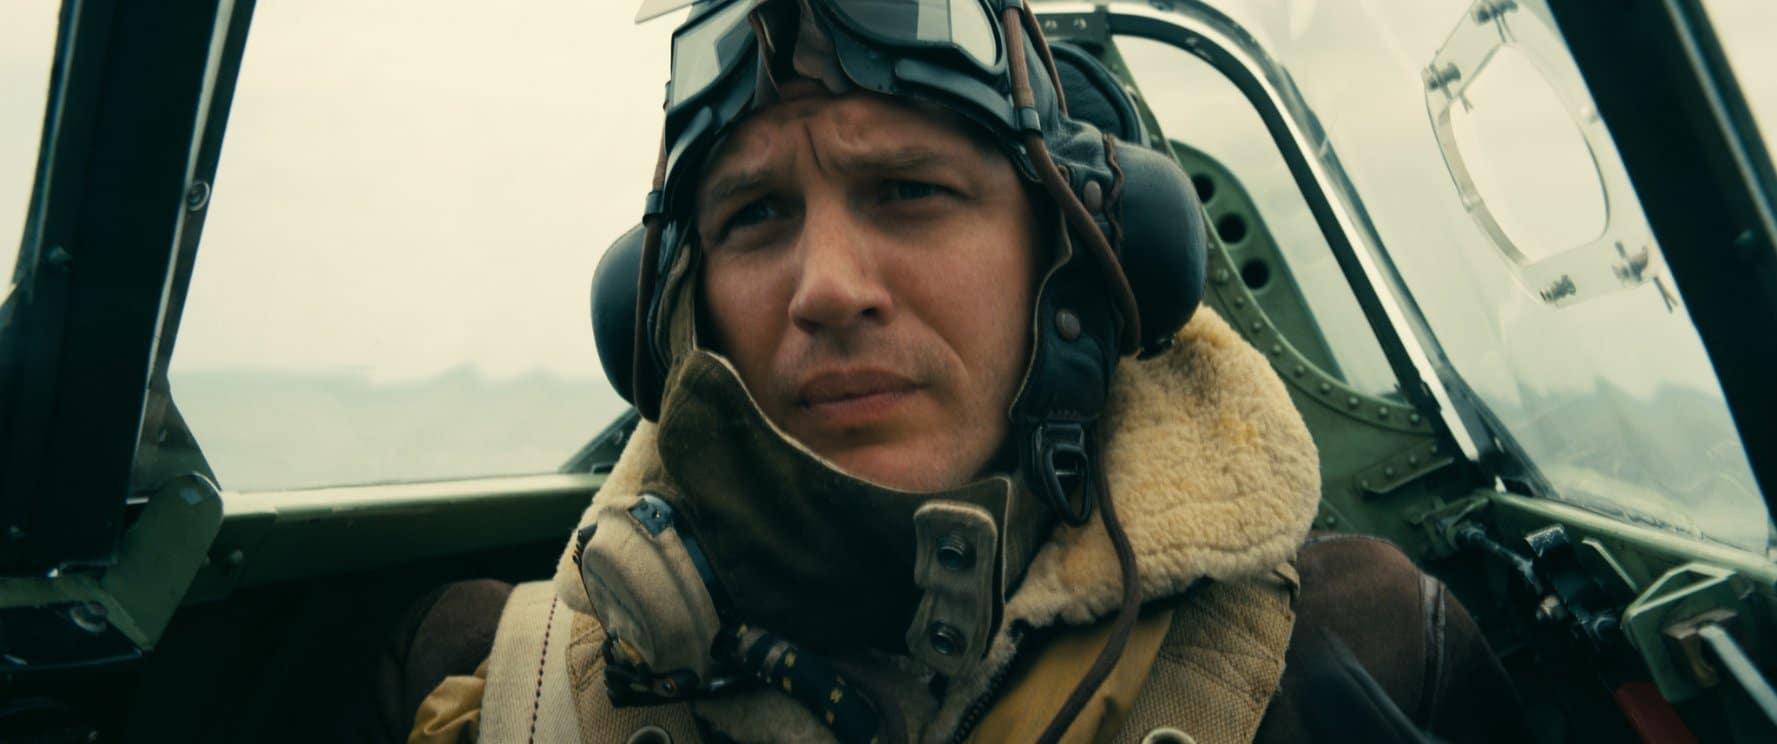 Dunkirk é o único filme live-action original entre as 25 maiores bilheterias de 2017